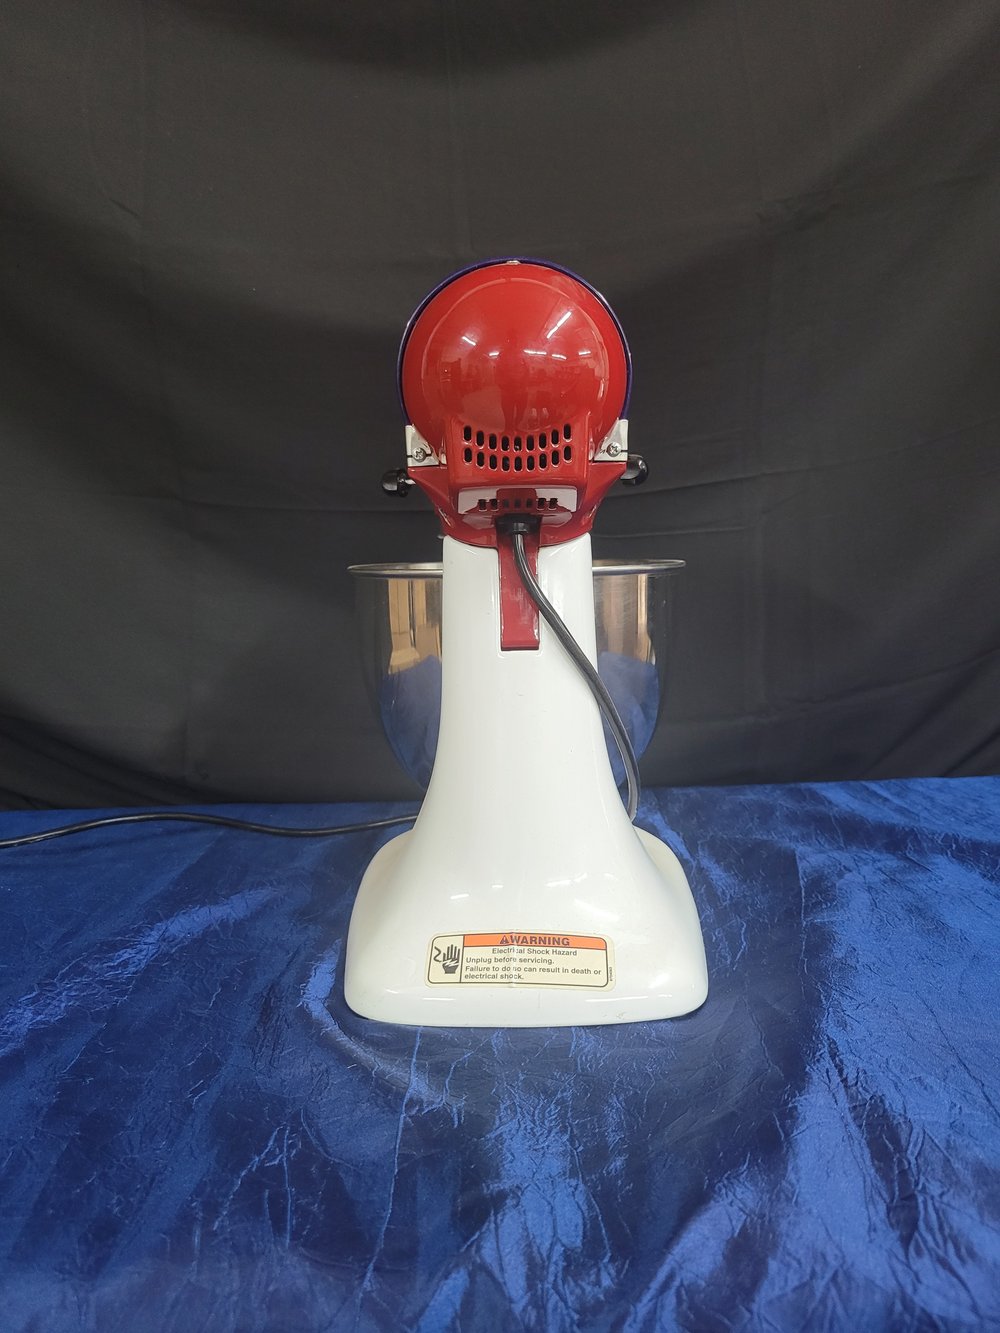 Professional 600 Bowl Lift Stand Mixer (RKP26M1XER) 6 qt — Mr. Mixer